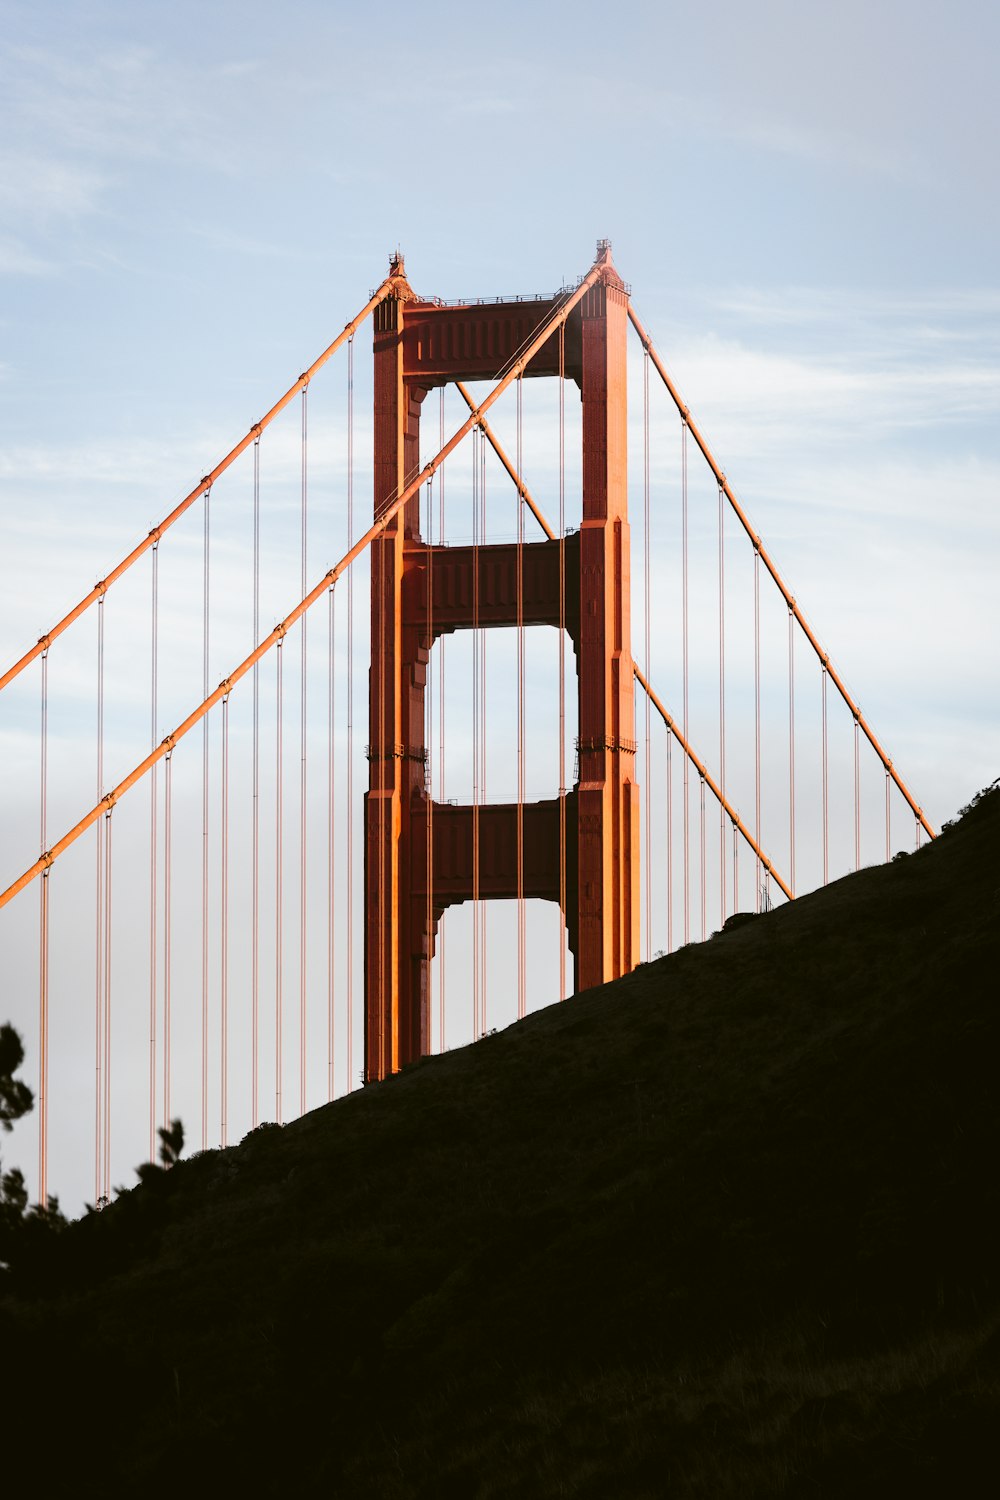 Una vista del puente Golden Gate desde la cima de una colina